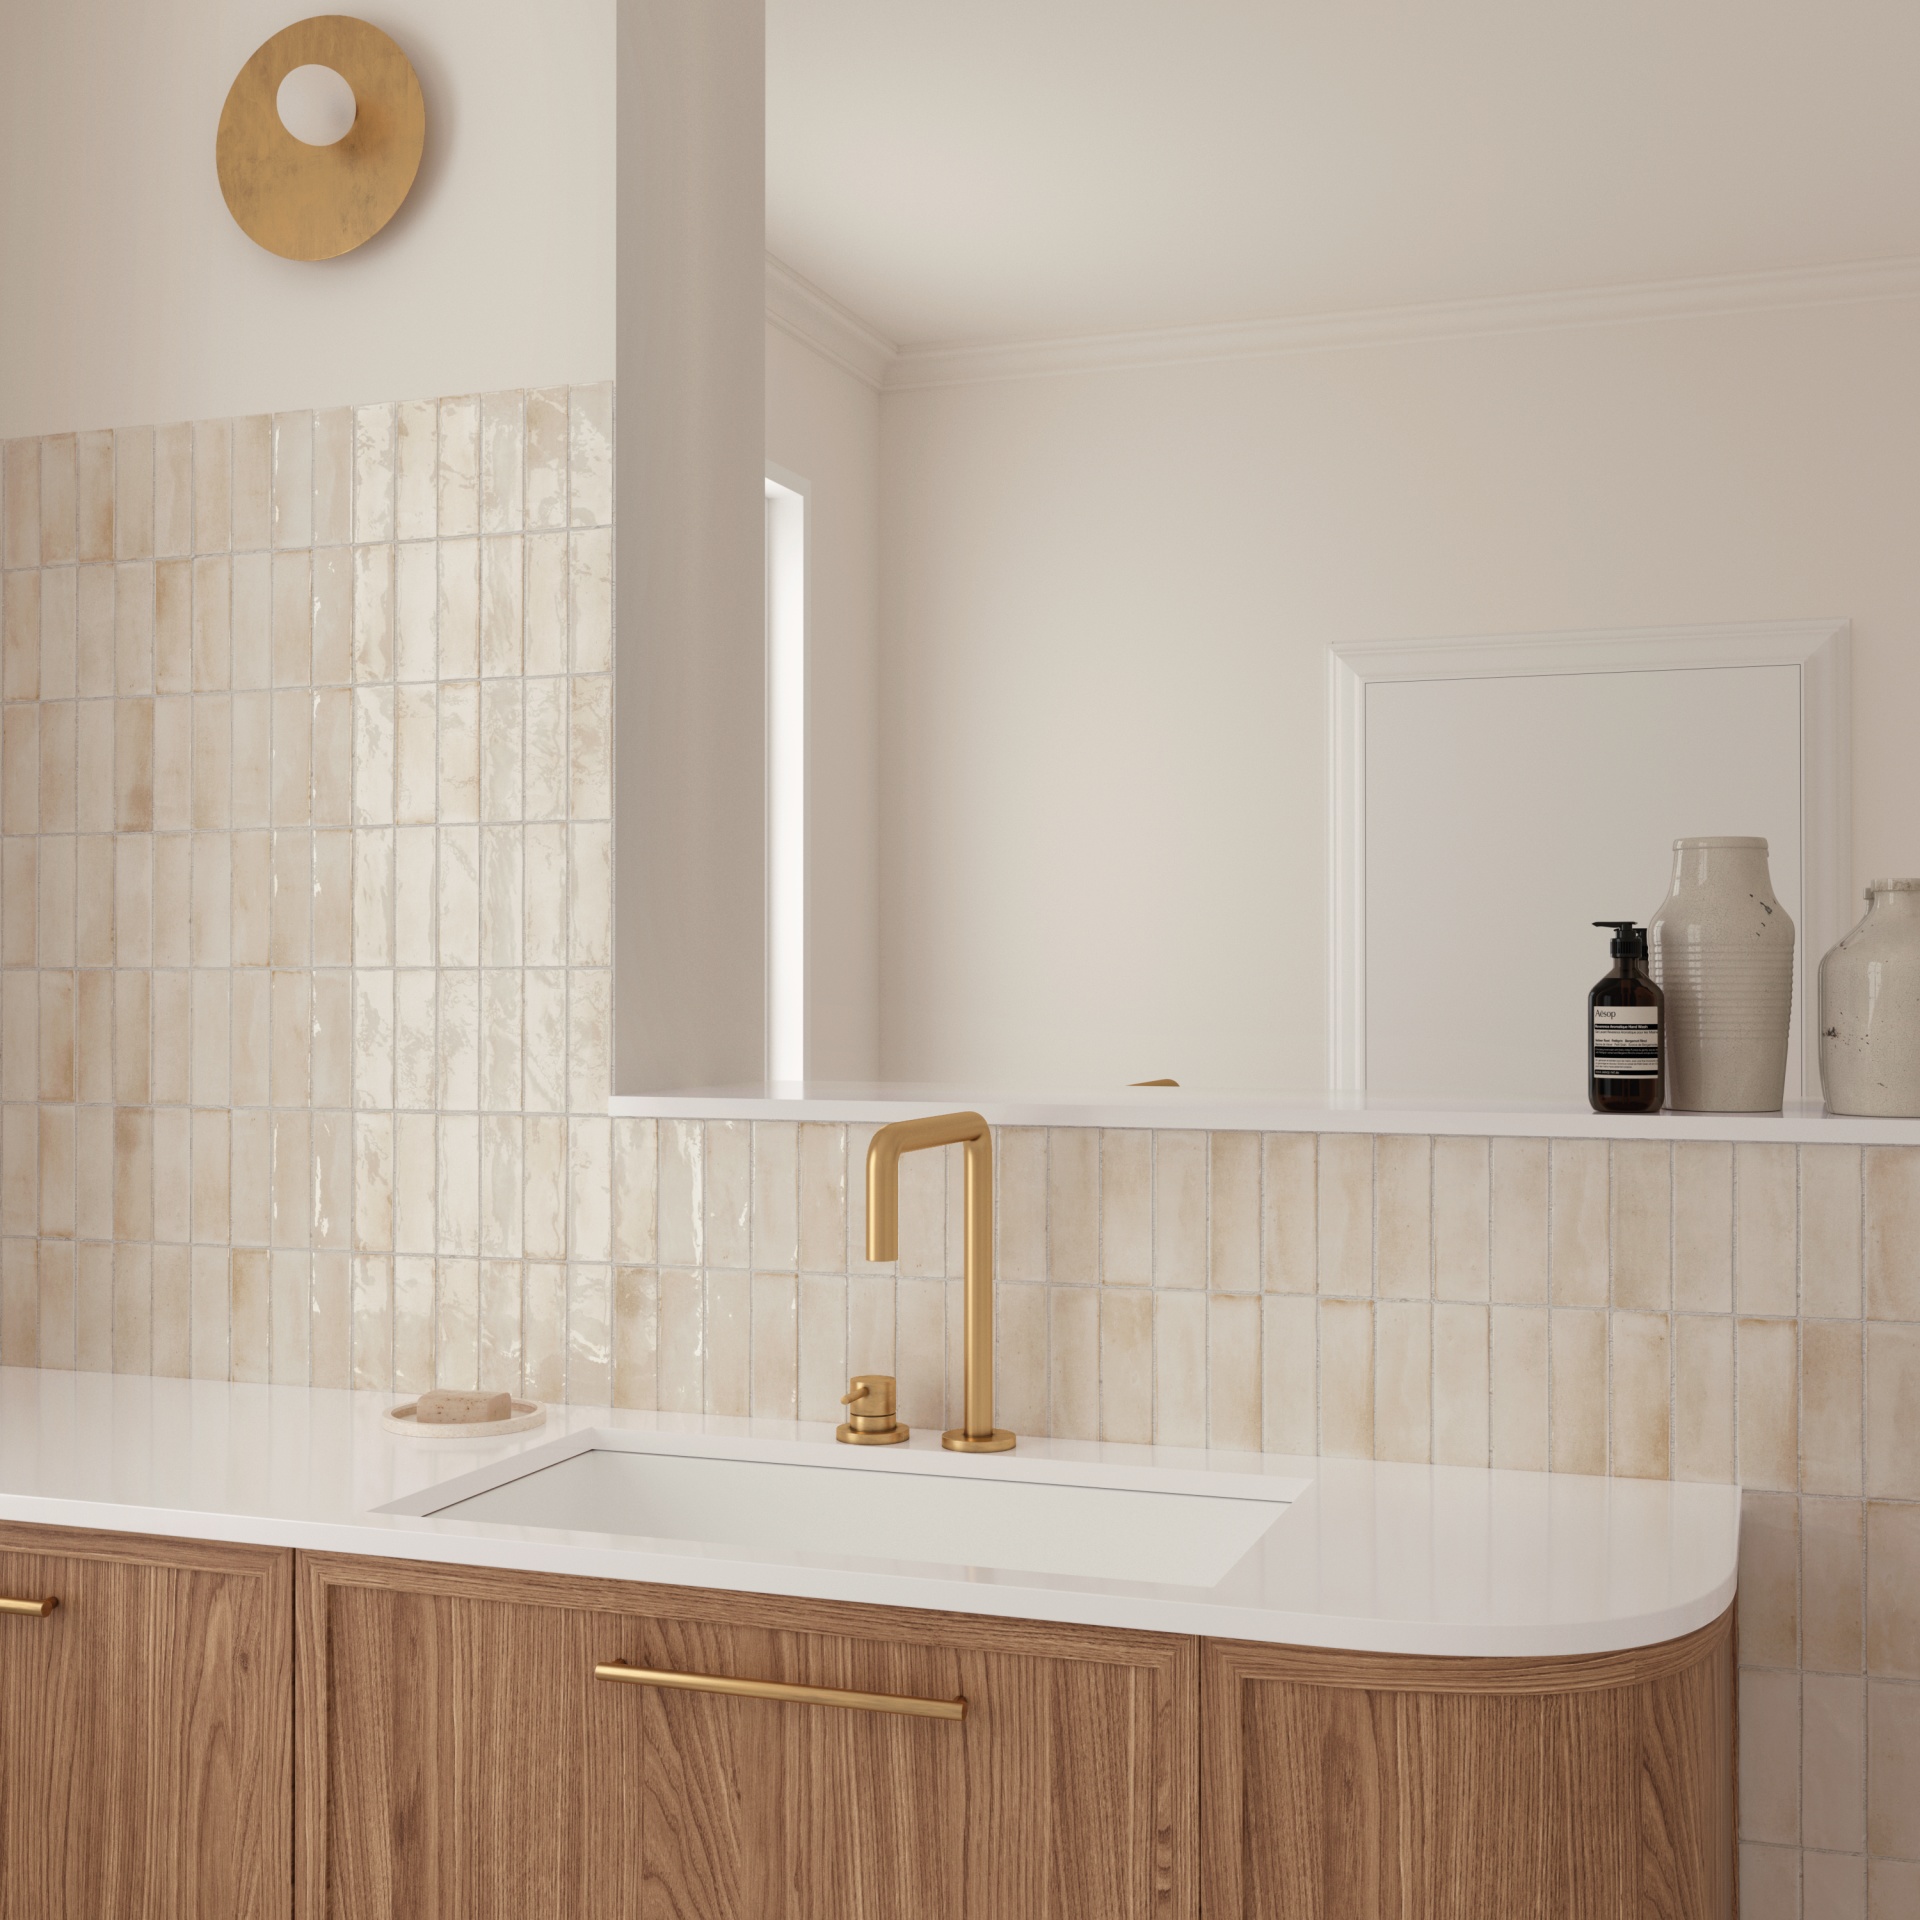 Zellige beige clair avec nuances dans une salle de bain épurée beige bois de robinetterie dorée et accessoires déco